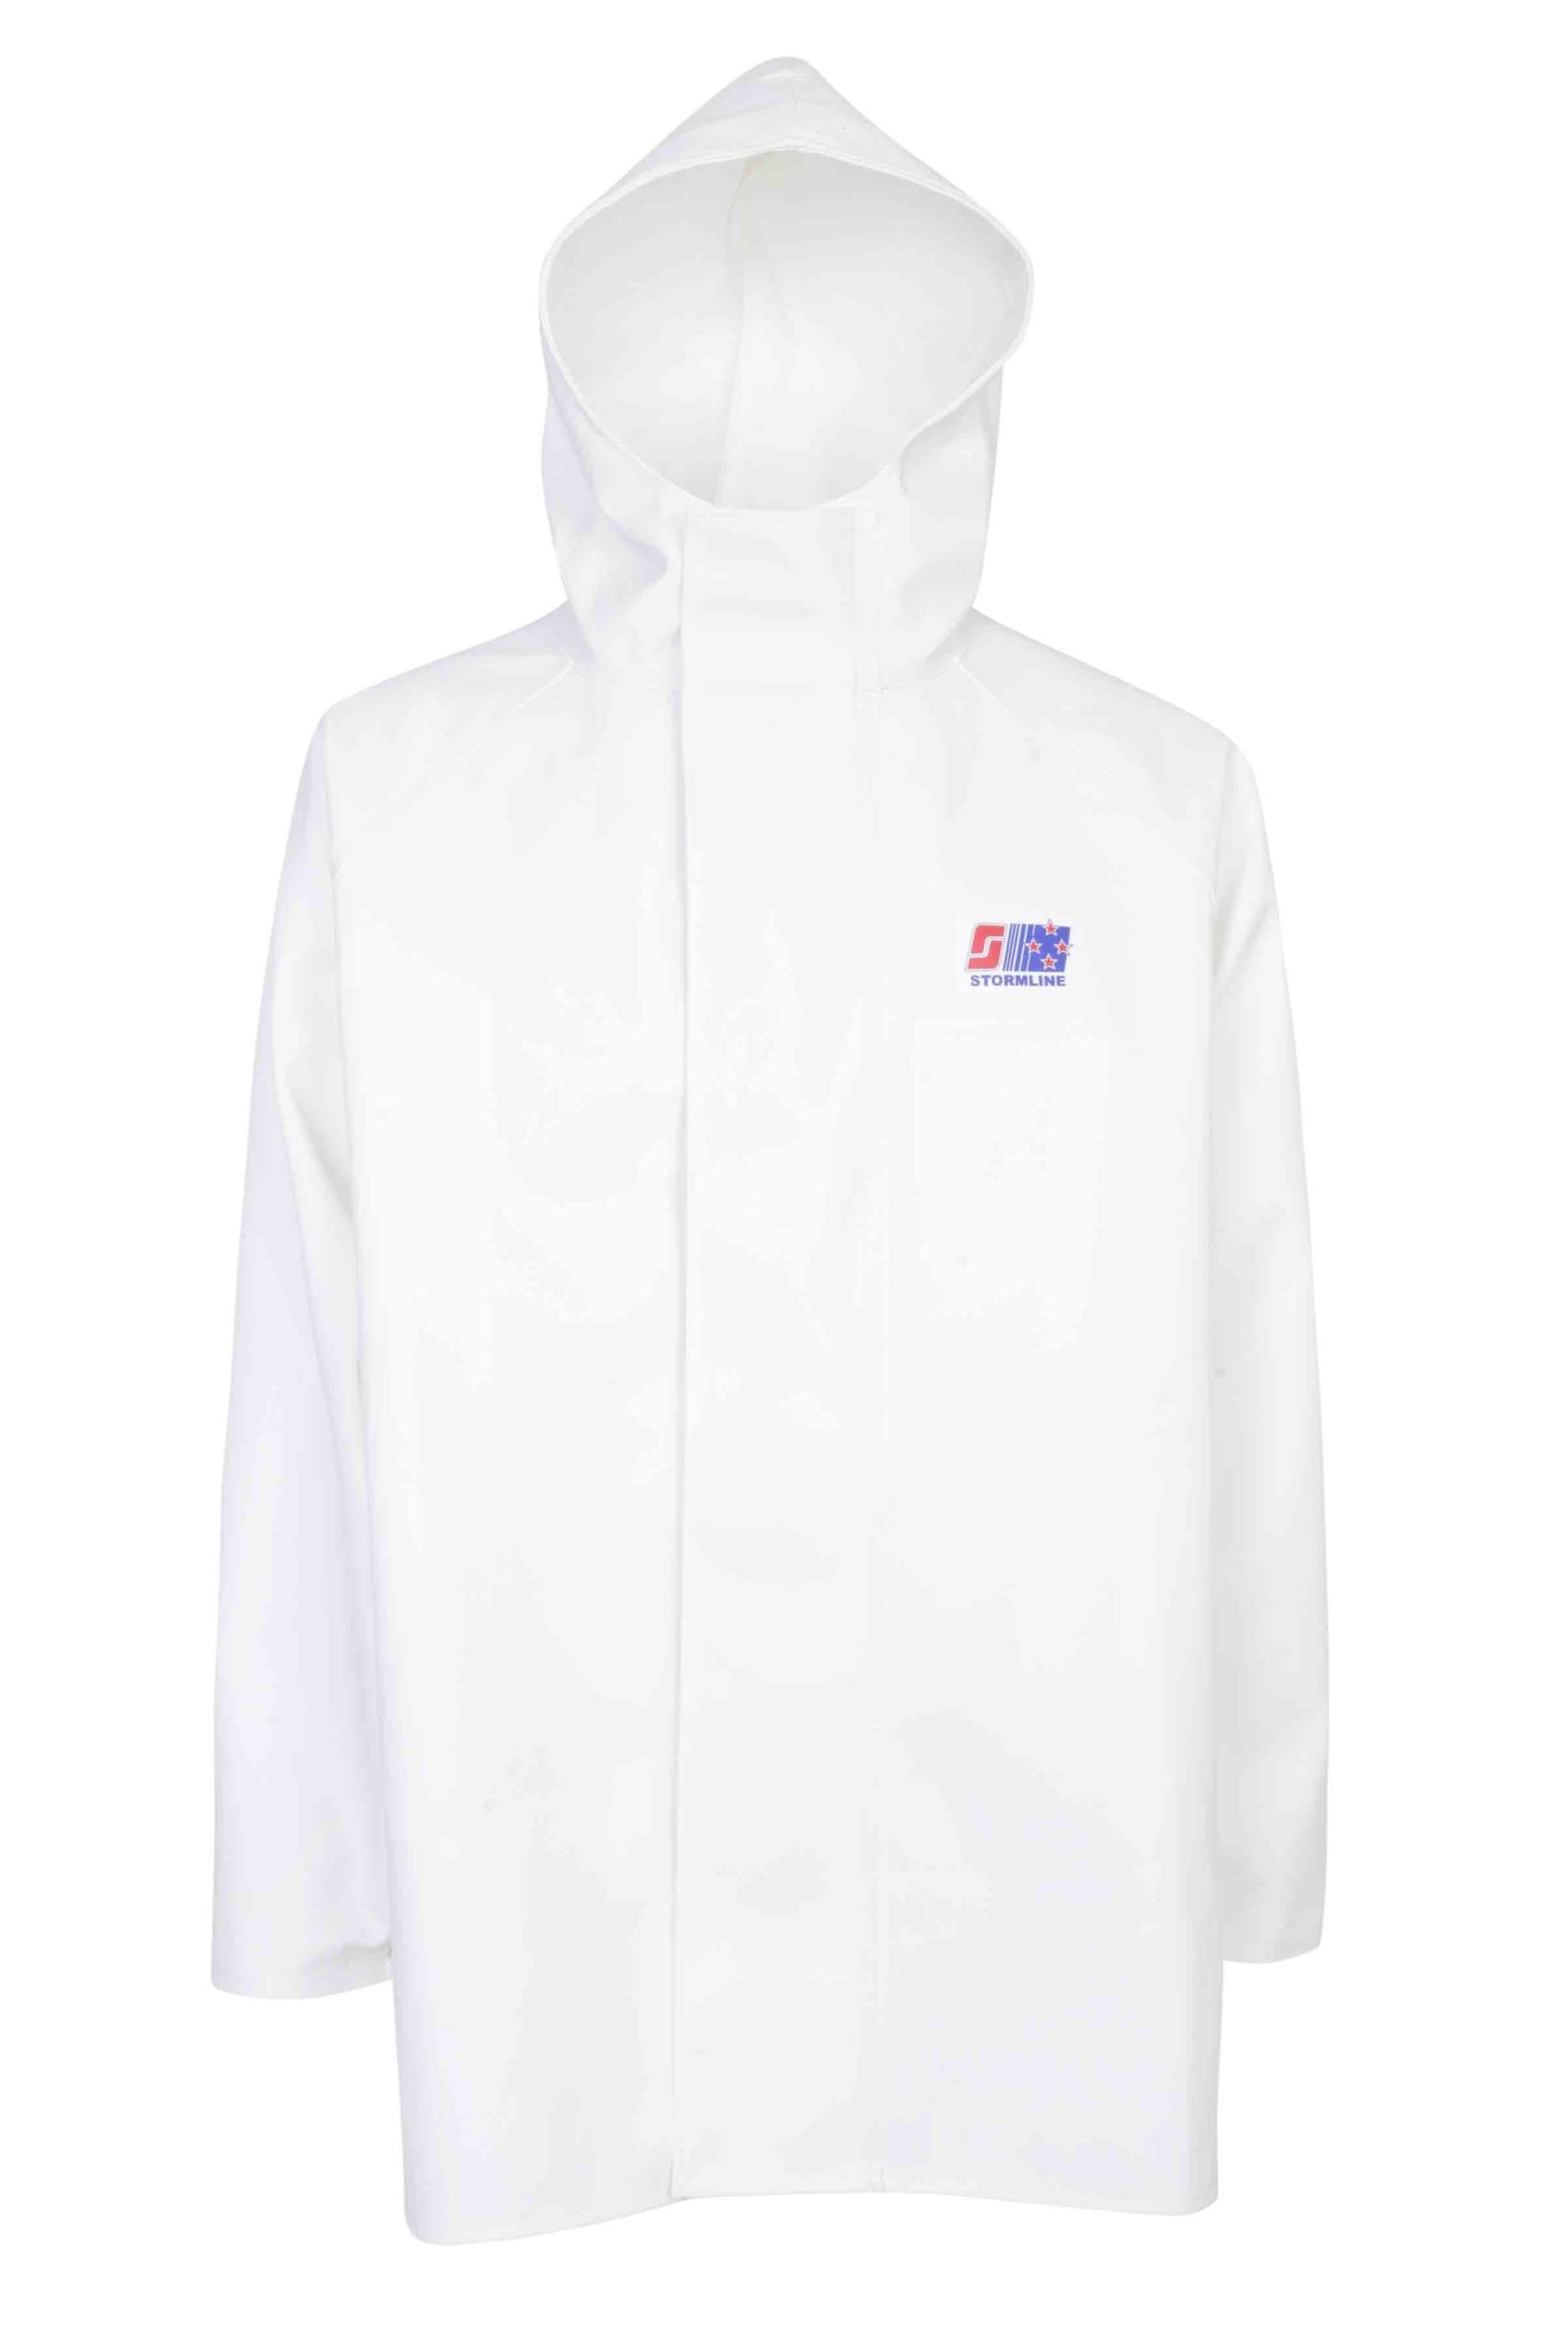 Stormline PVC Fishing Rain Jacket – Jackets, Workwear Clothing – Mike  Cornish